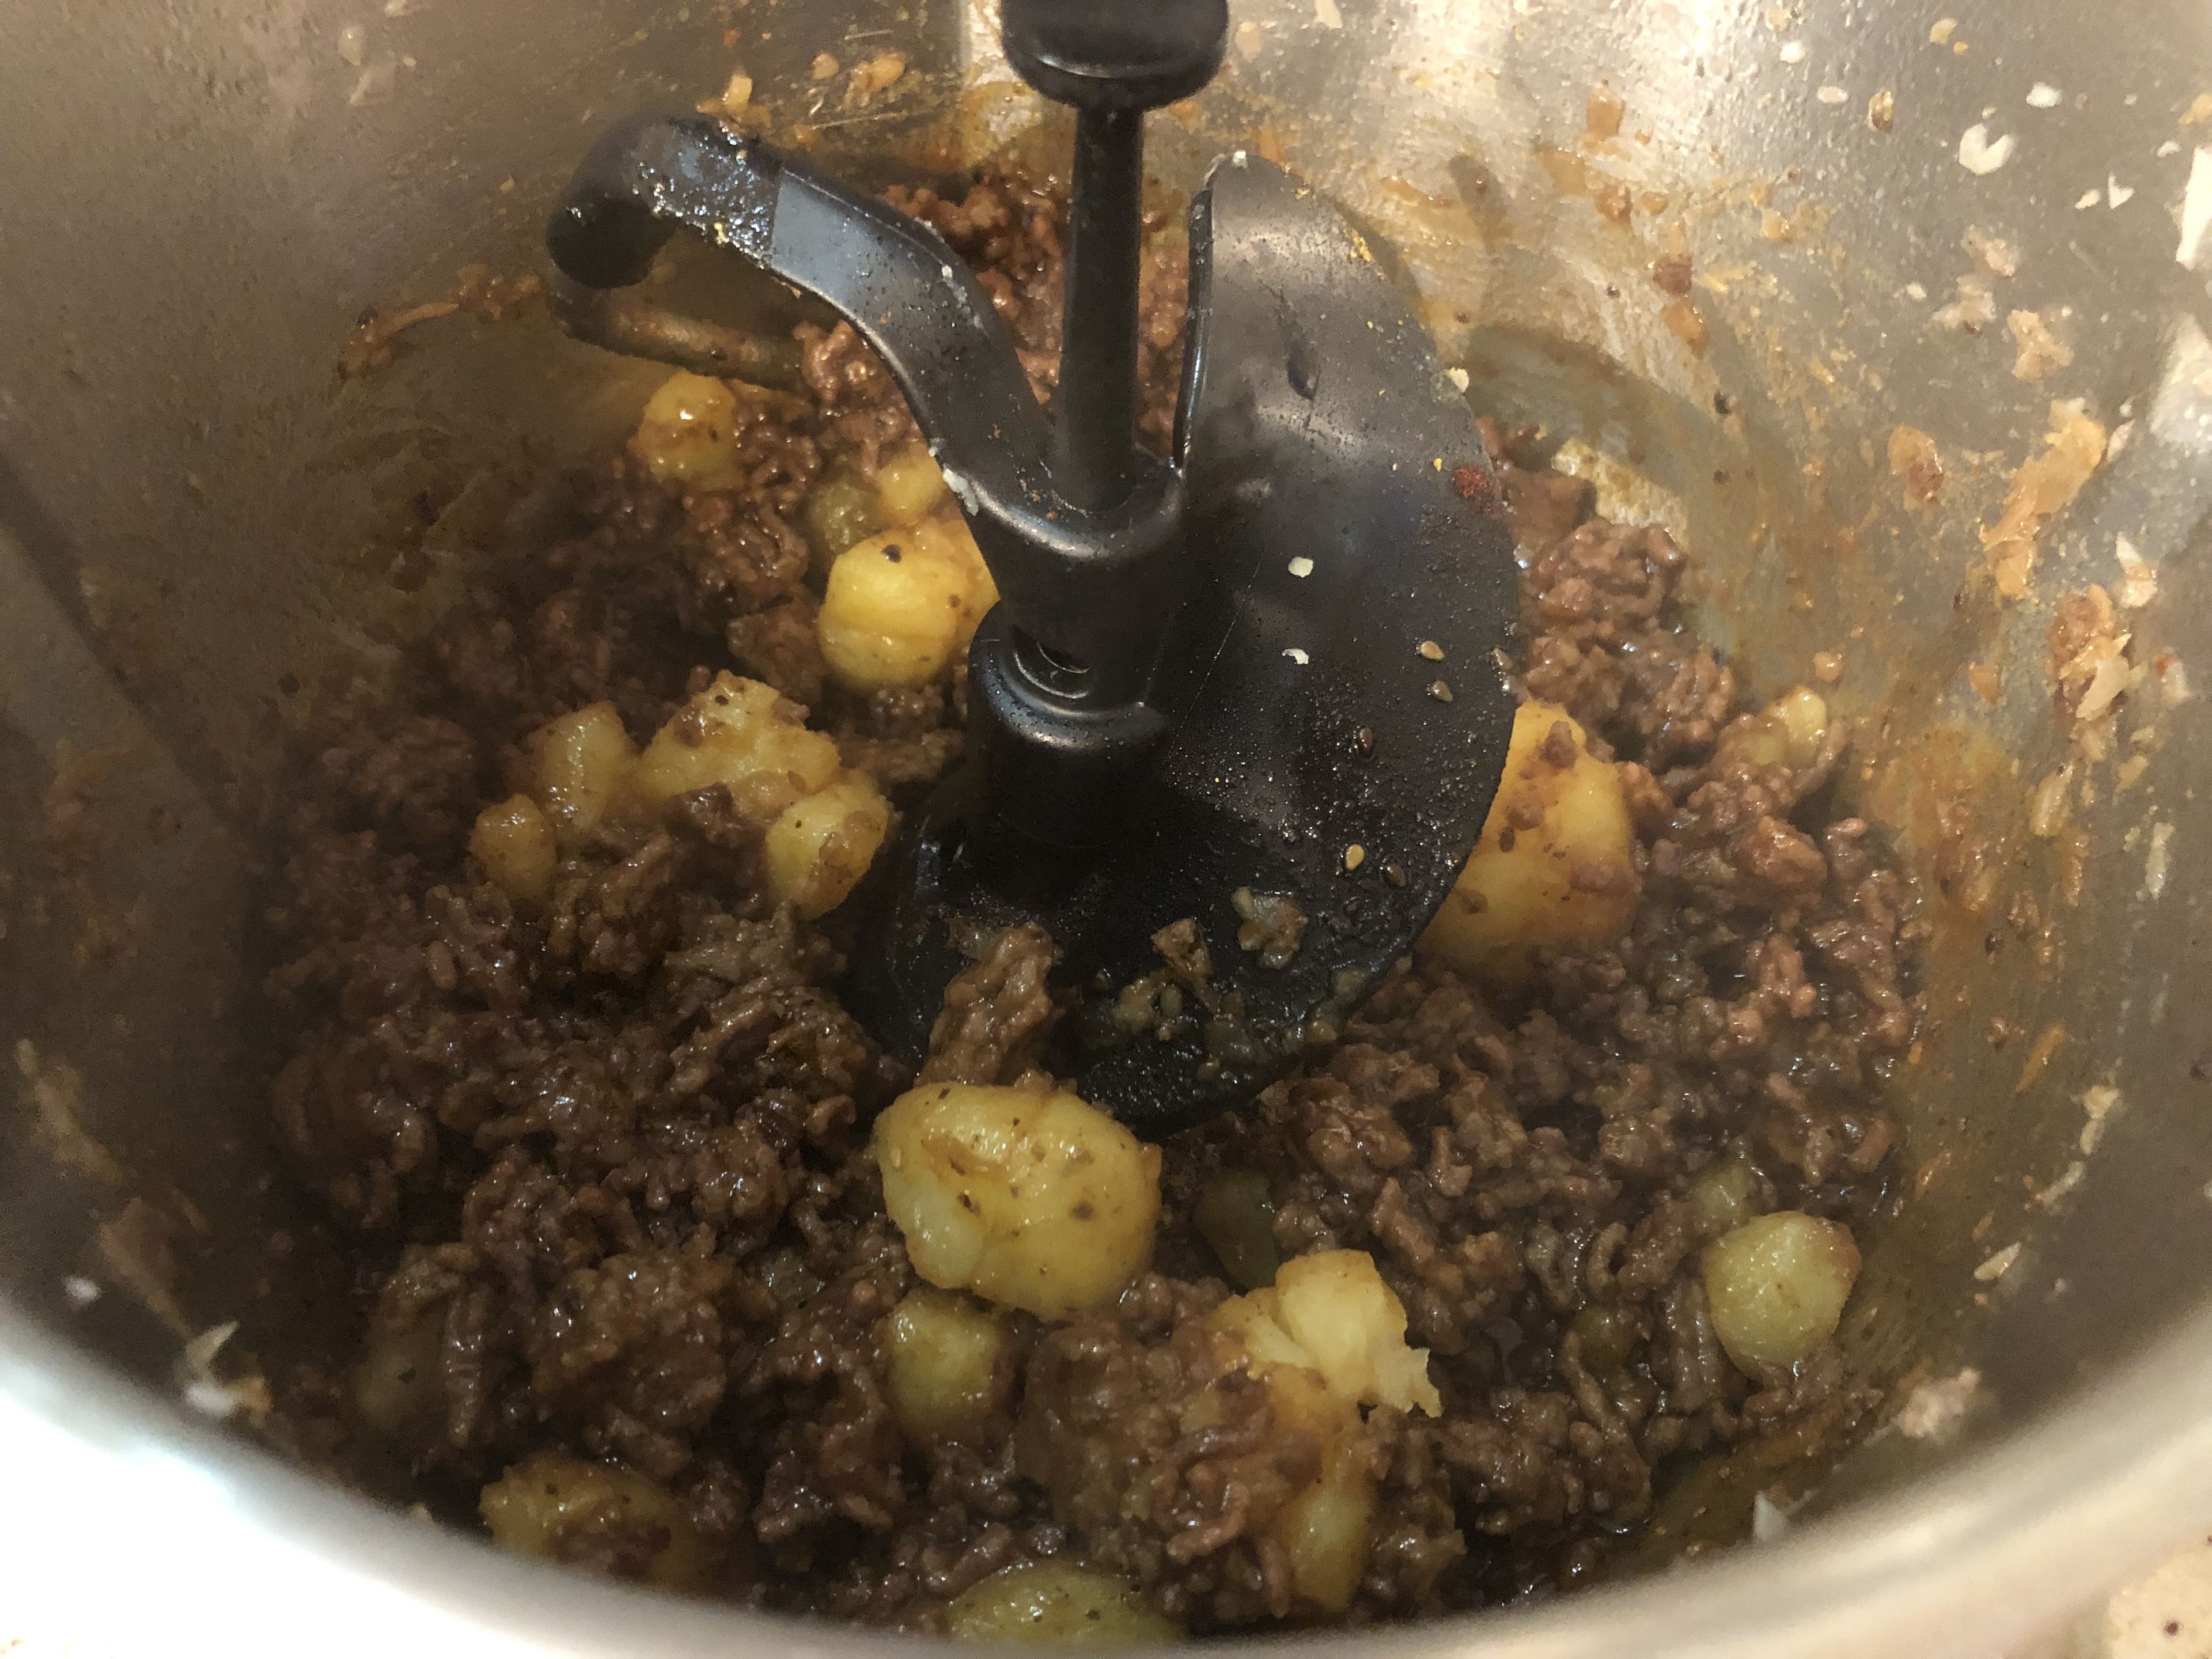 Die Kartoffeln zum Hackfleisch geben und alles mit der Teriyaki-Sauce übergießen. Mit dem 3D-Rührer auf Stufe 2 ca. 3 Minuten vermischen und bei 130°C braten. Nochmal abschmecken und bei Bedarf nachwürzen. Die Mischung ist nun fertig. In einen Teller umfüllen und beiseite stellen
(3D-Rührer | Stufe 2 | 130°C | 3 Min.).